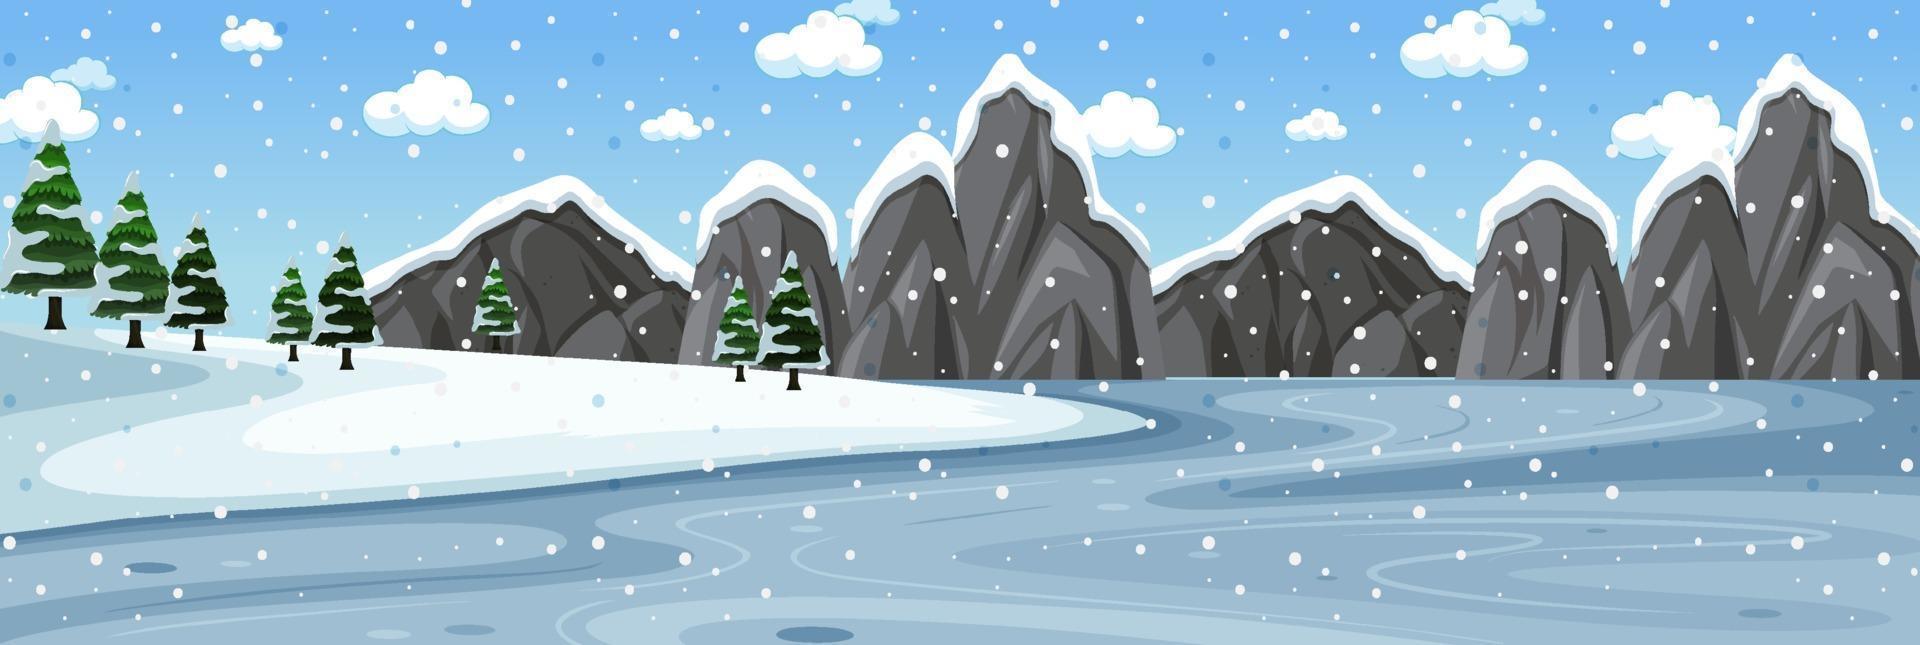 scena invernale con paesaggio orizzontale della foresta vettore